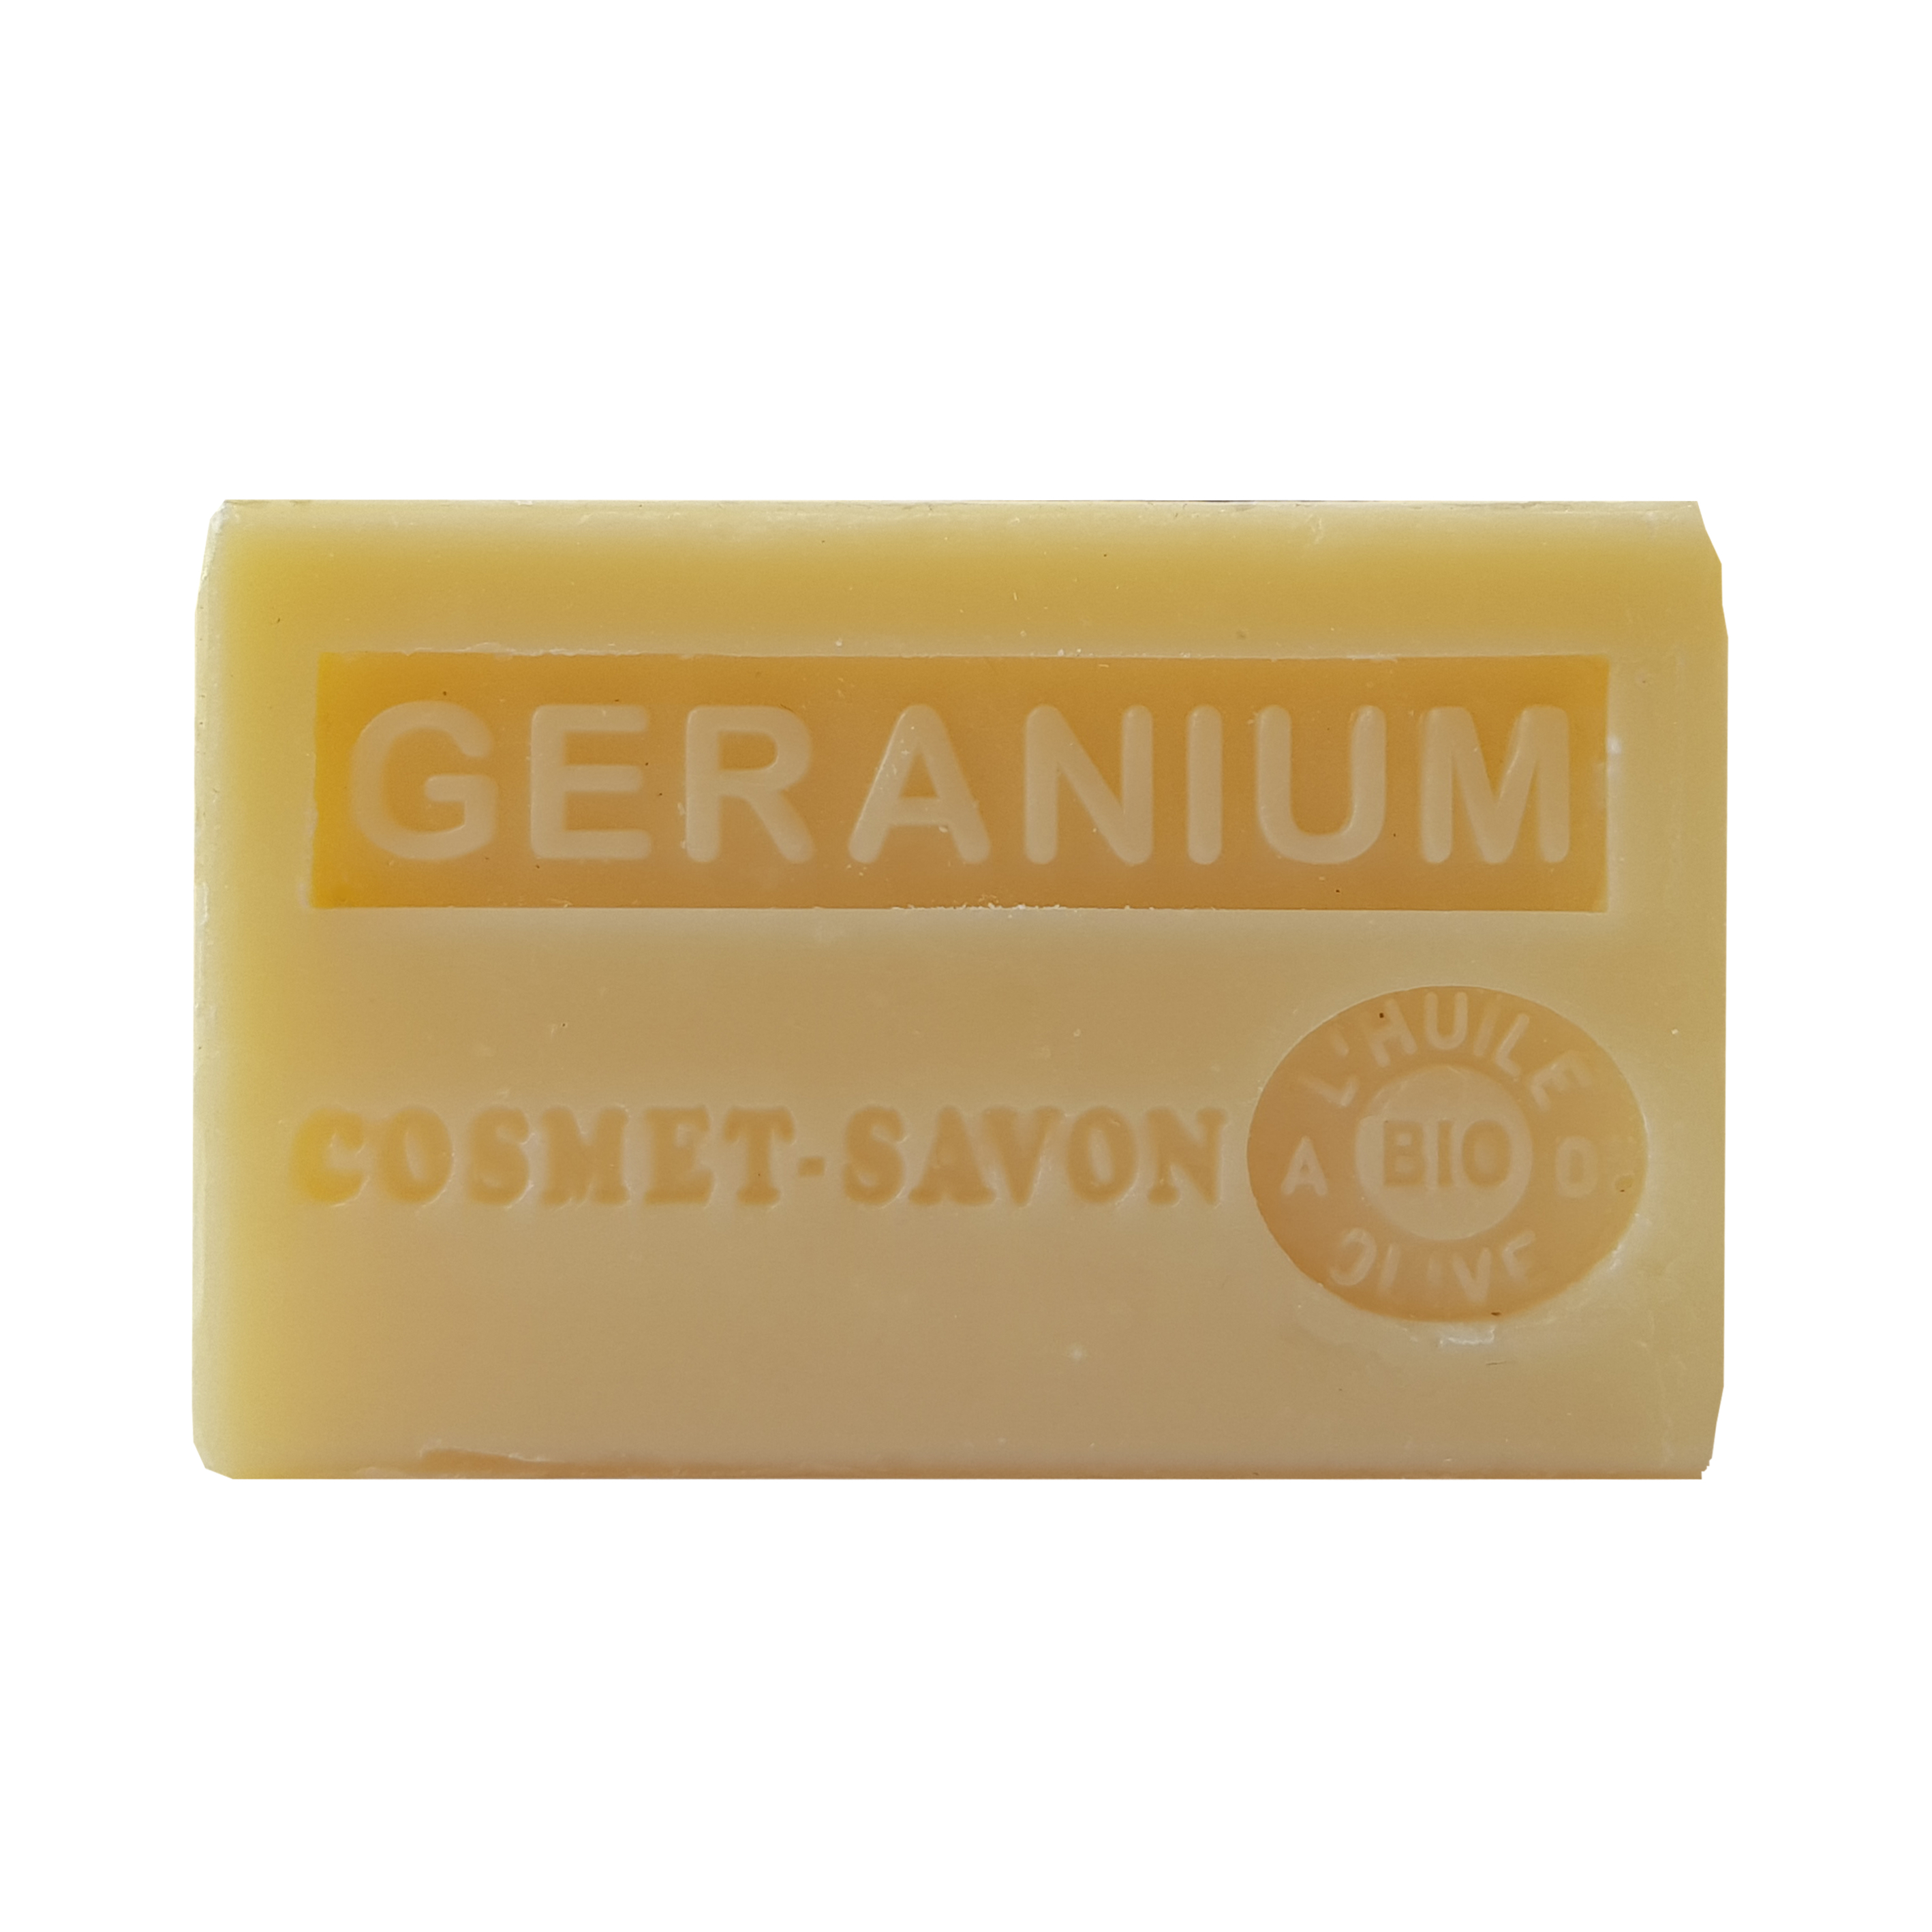 geranium-savon-125gr-au-beurre-de-karite-bio-cosmet-savon-3665205006386-face-JPEG